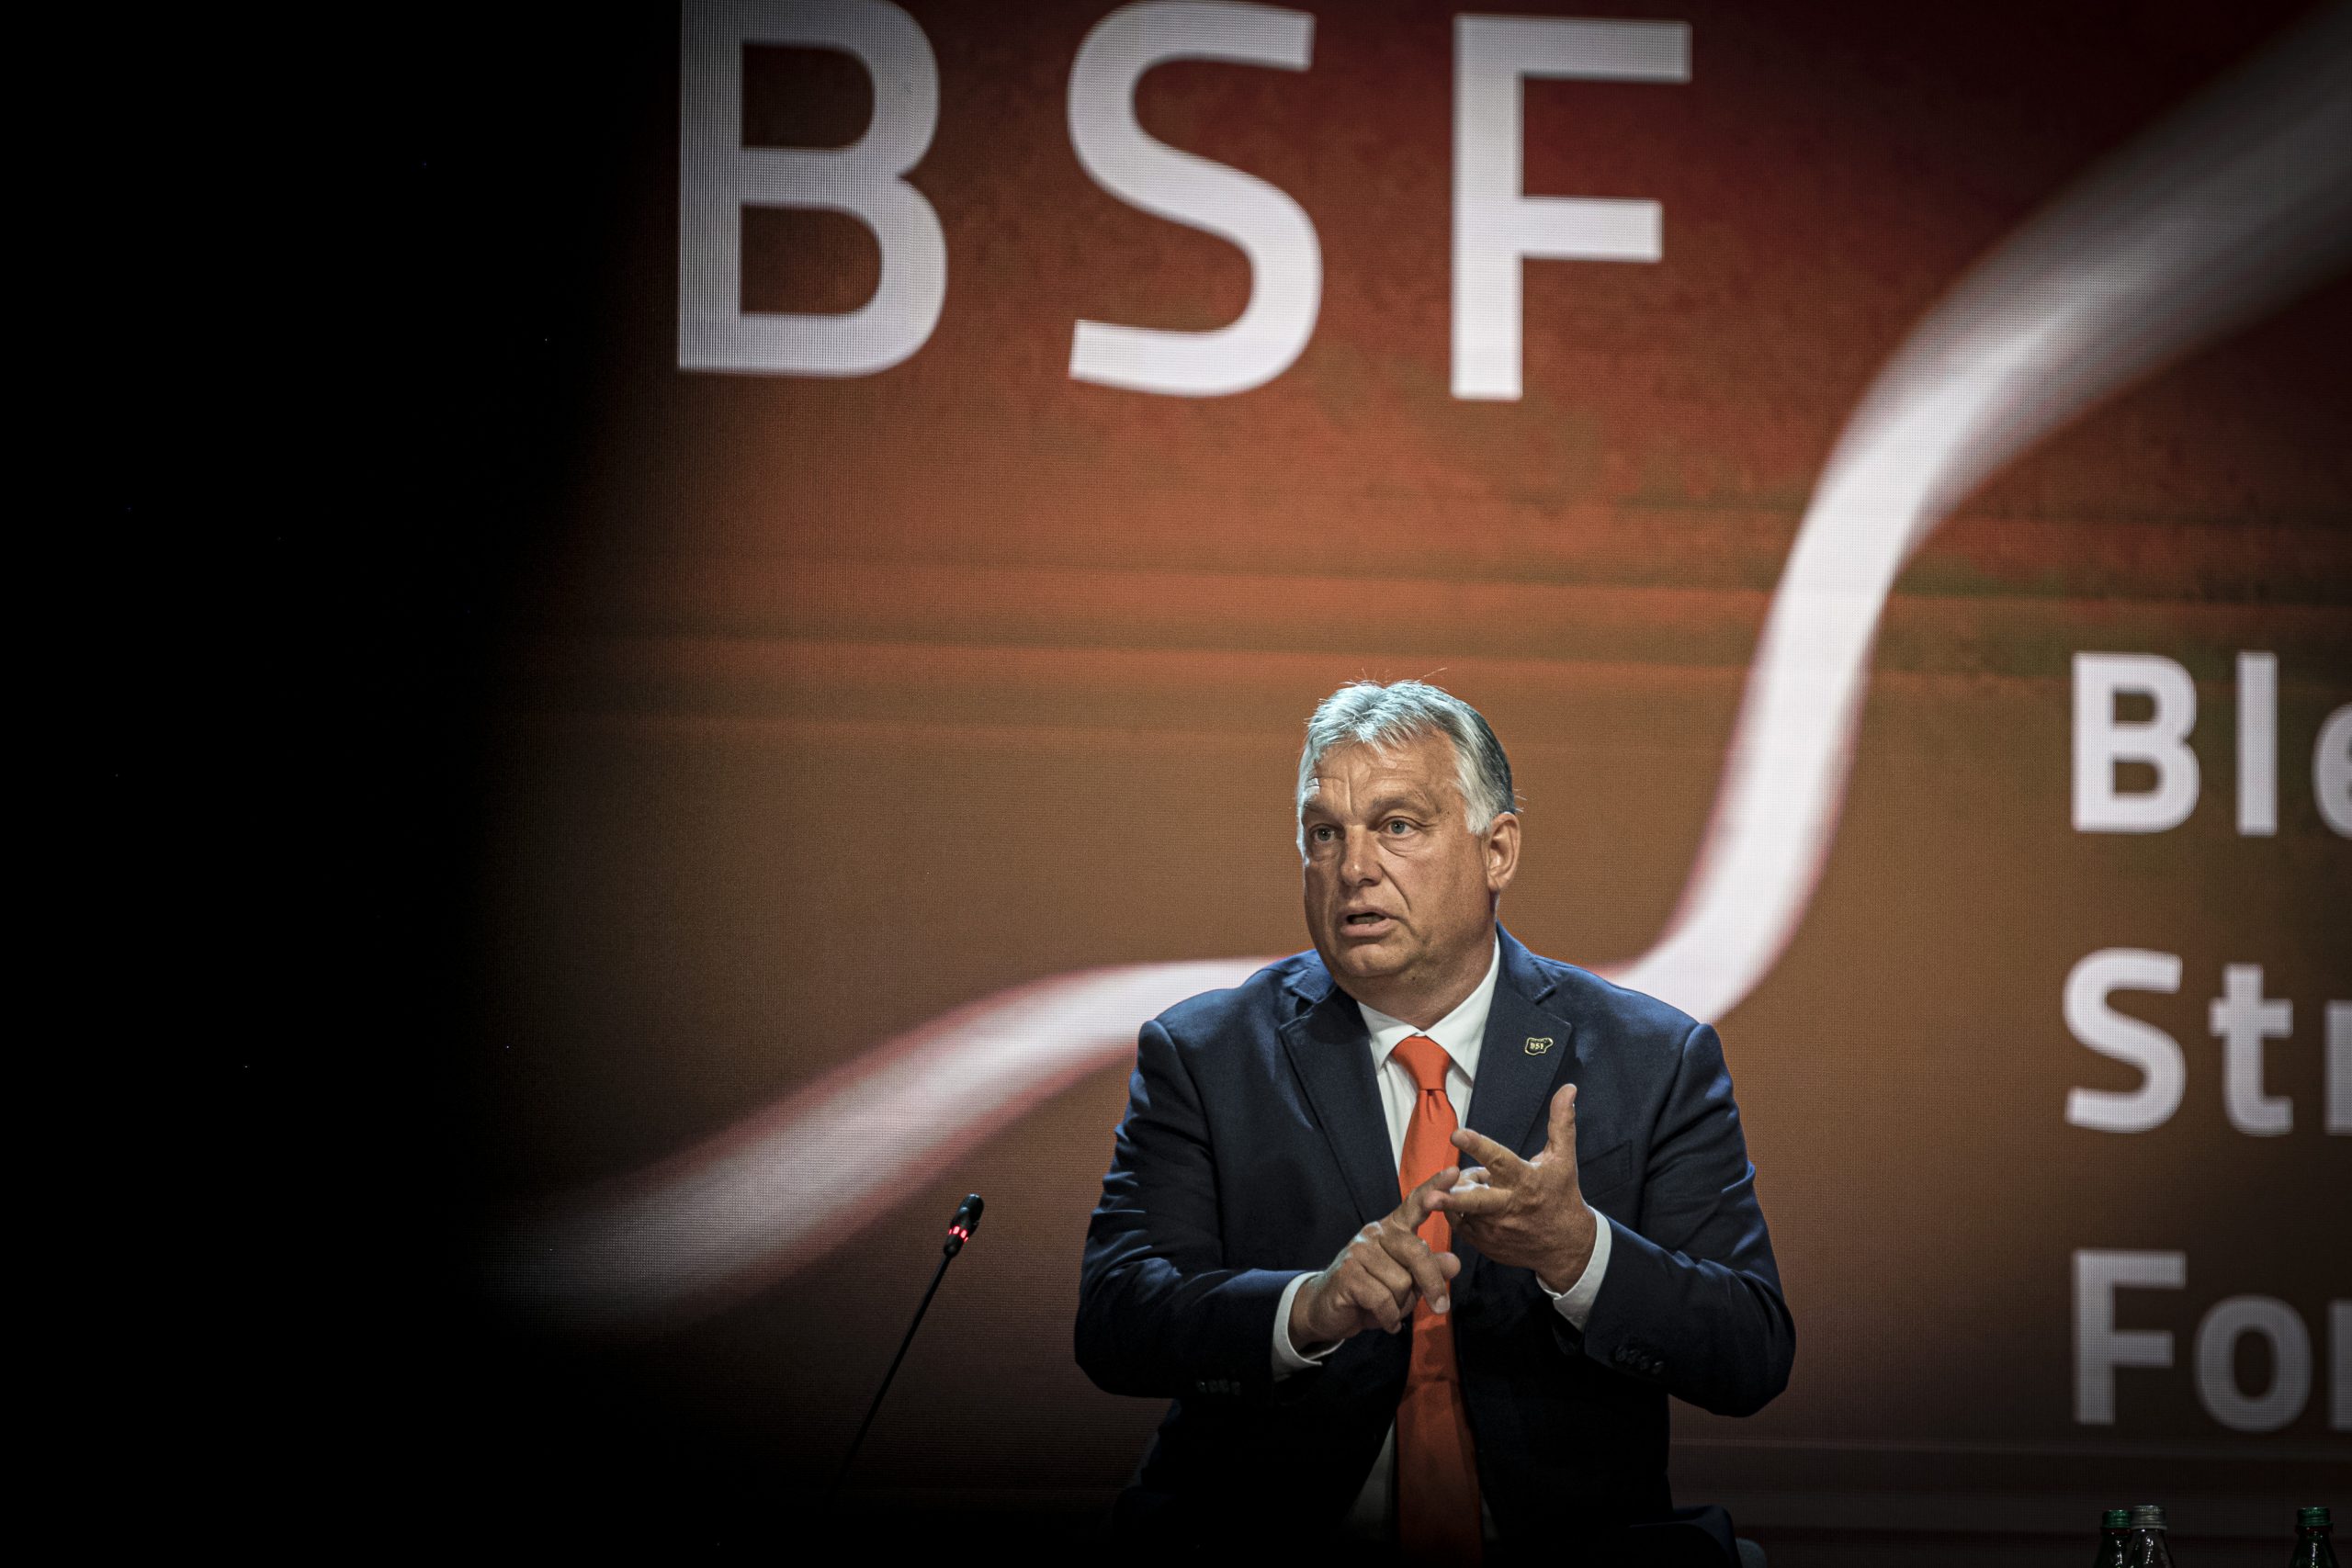 Orbán: Visegrad Region Has Brighter Prospects than Rest of EU